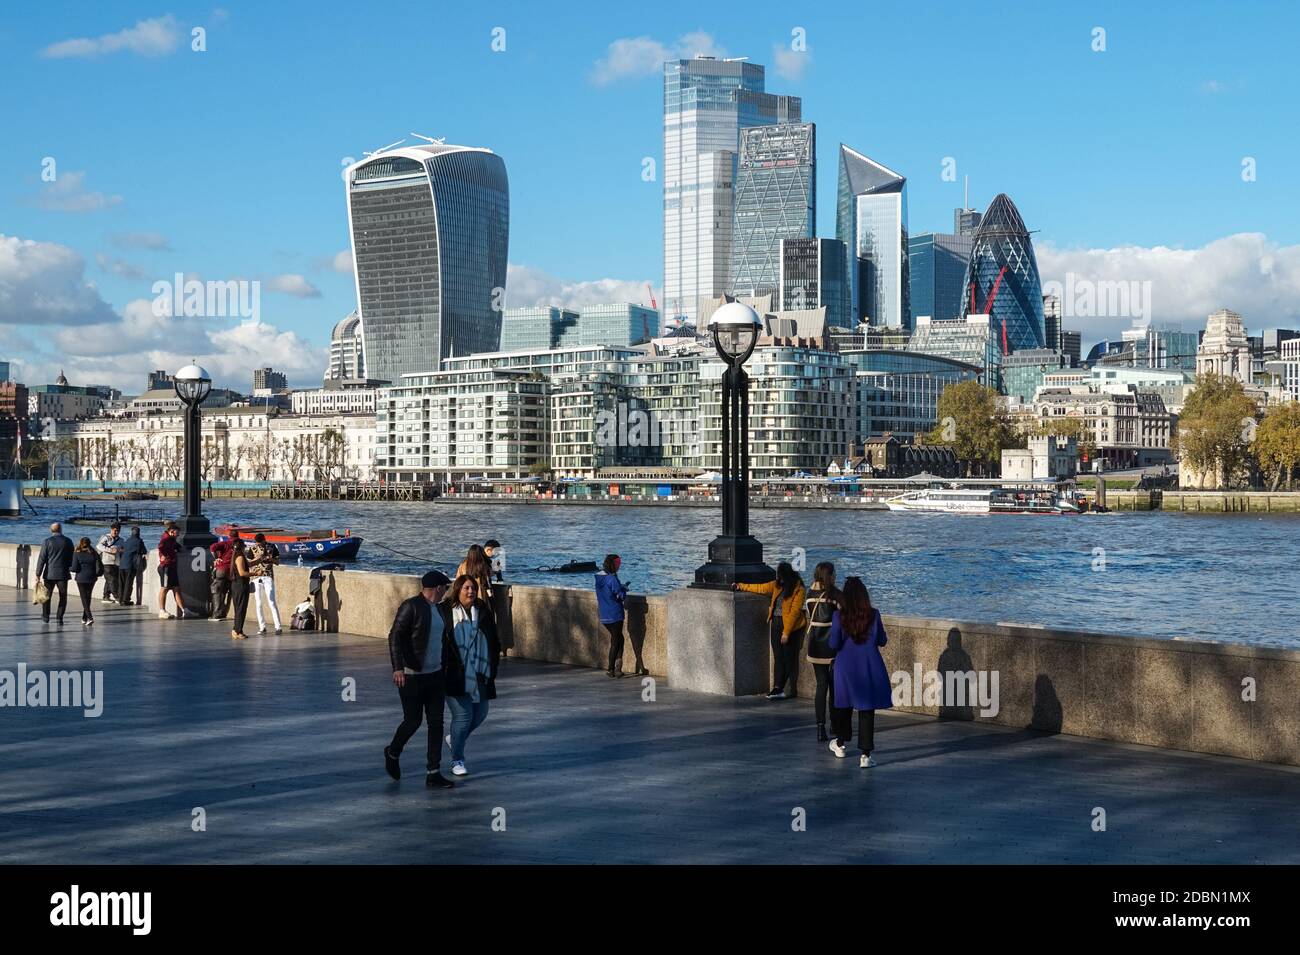 Les gens qui apprécient la journée ensoleillée à southbank of River Thames avec les gratte-ciels de la ville en arrière-plan, Londres Angleterre Royaume-Uni Banque D'Images